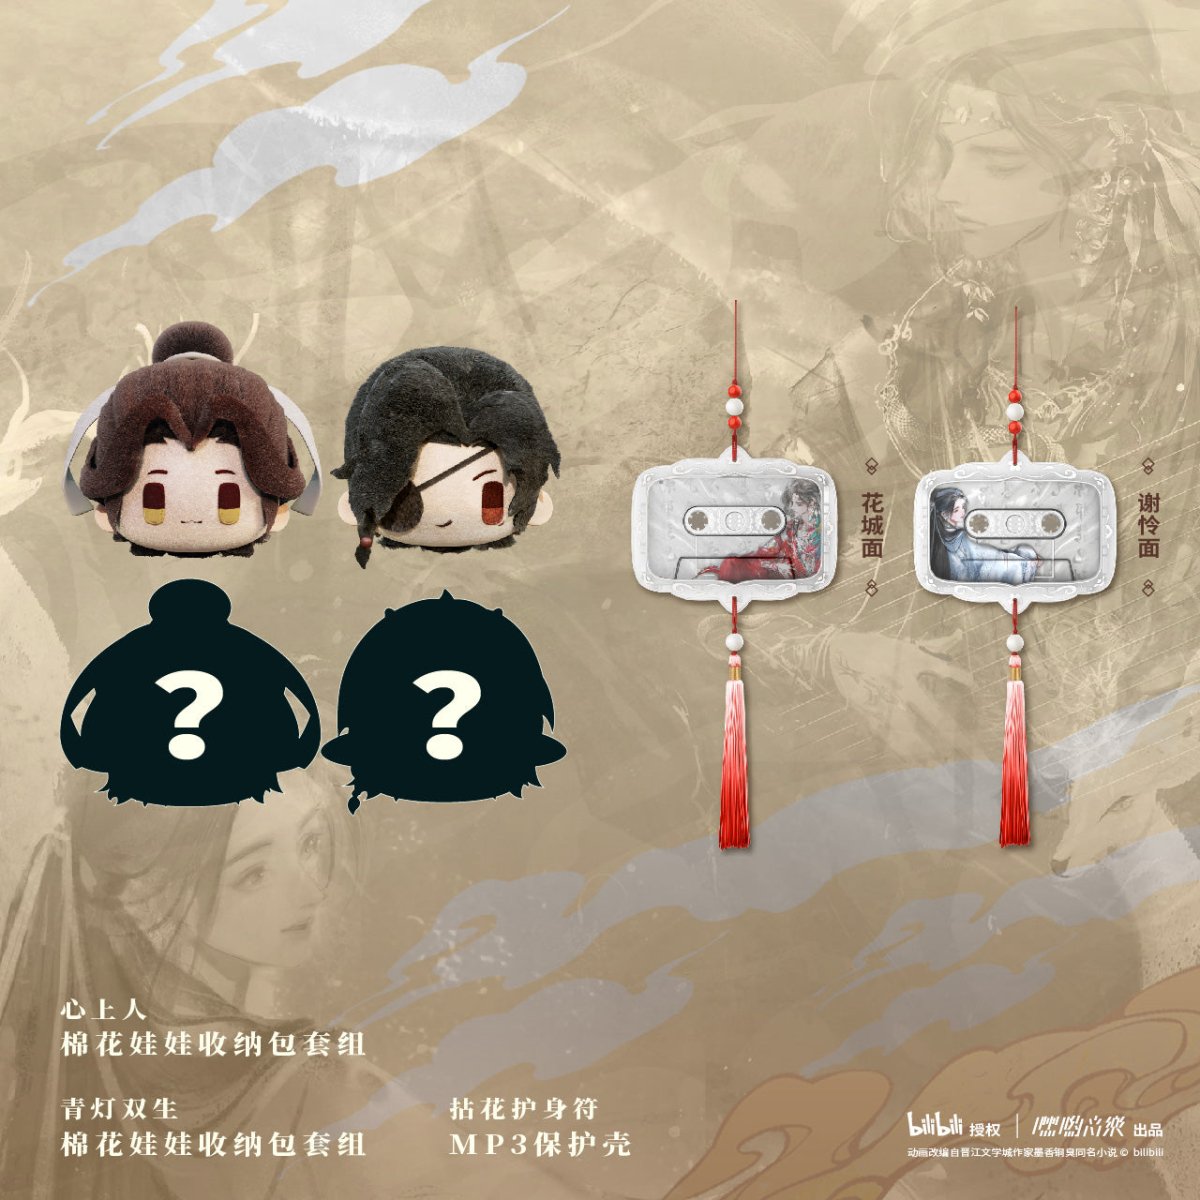 Heaven Official's Blessing | Tian Guan Ci Fu Dong Hua Hua & Lian MP3 Hei Yo Yin Yue- FUNIMECITY